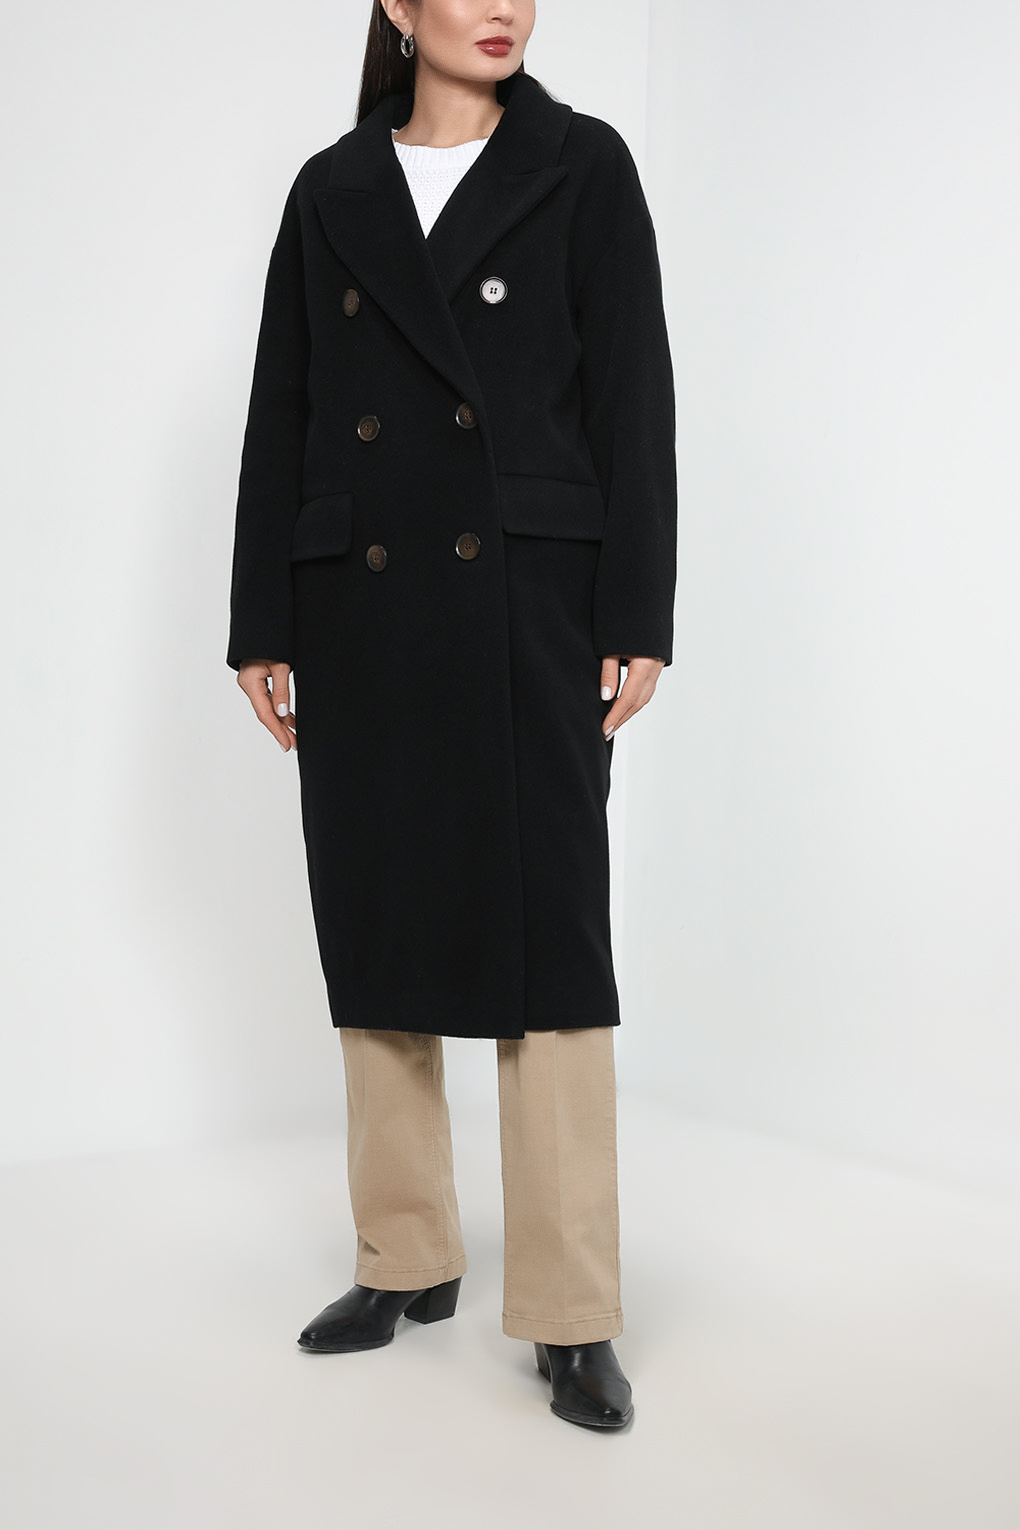 Пальто женское Belucci BL23016114-001 черное 50 RU